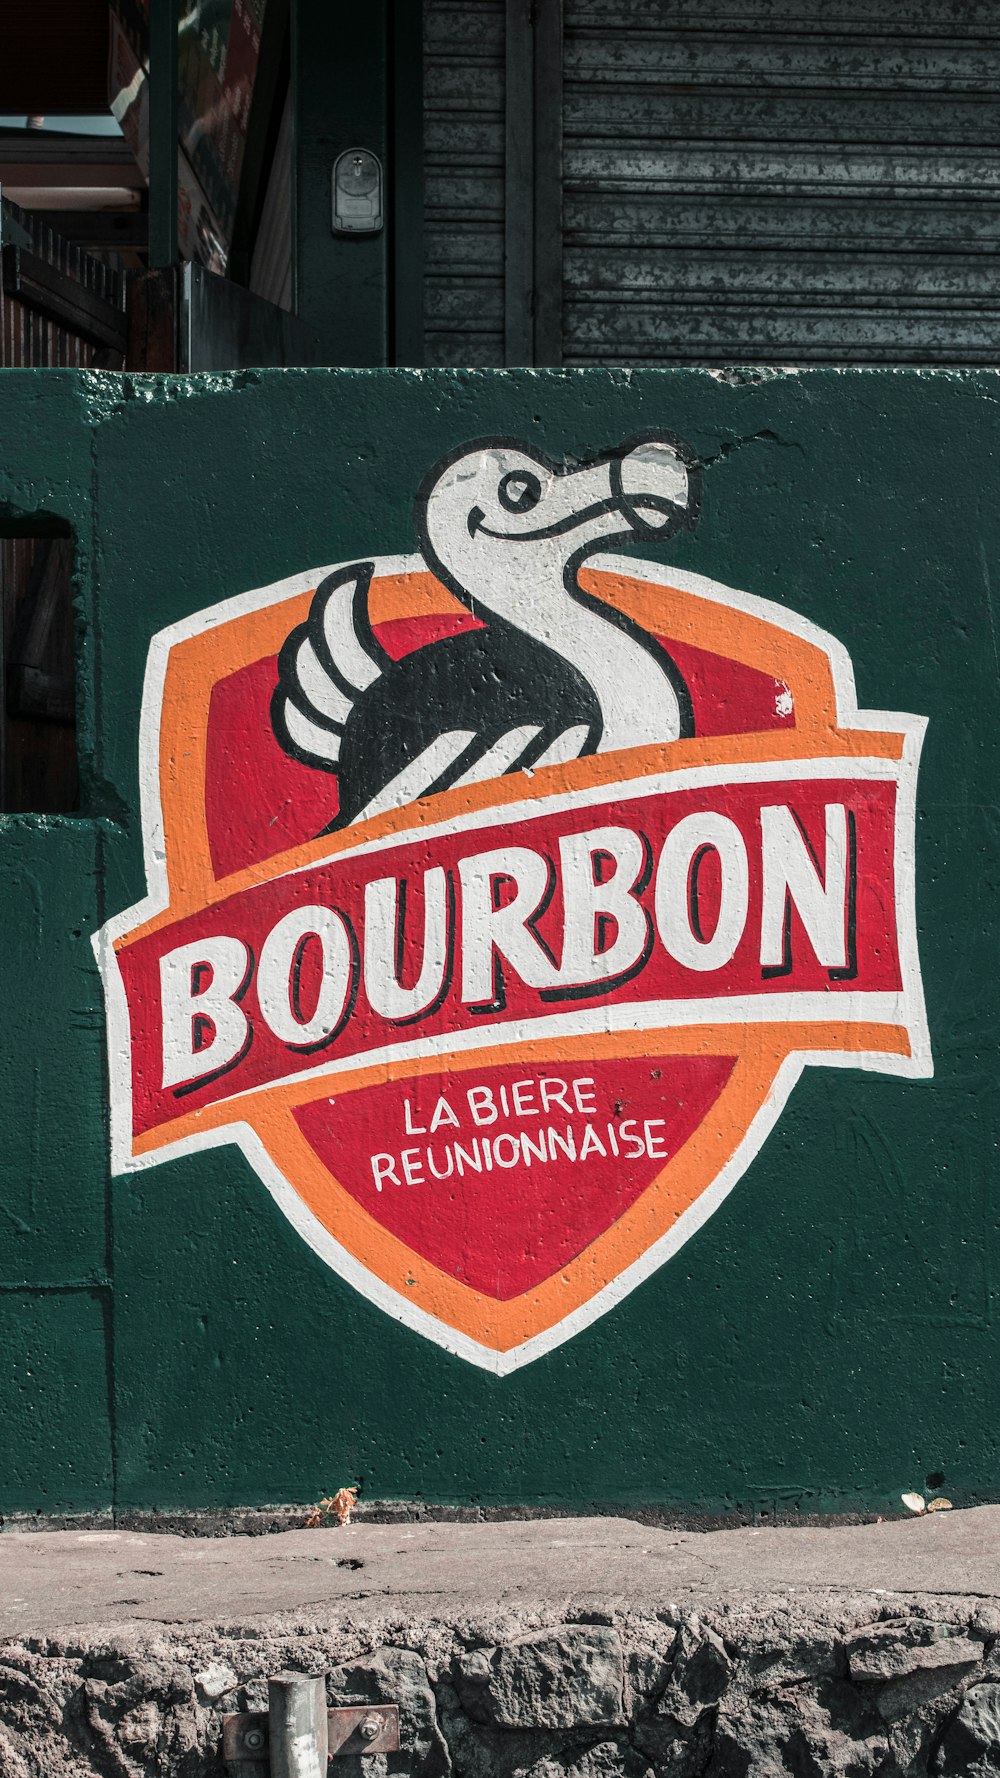 Bourbon La Biere Reunionnaise box close-up photo